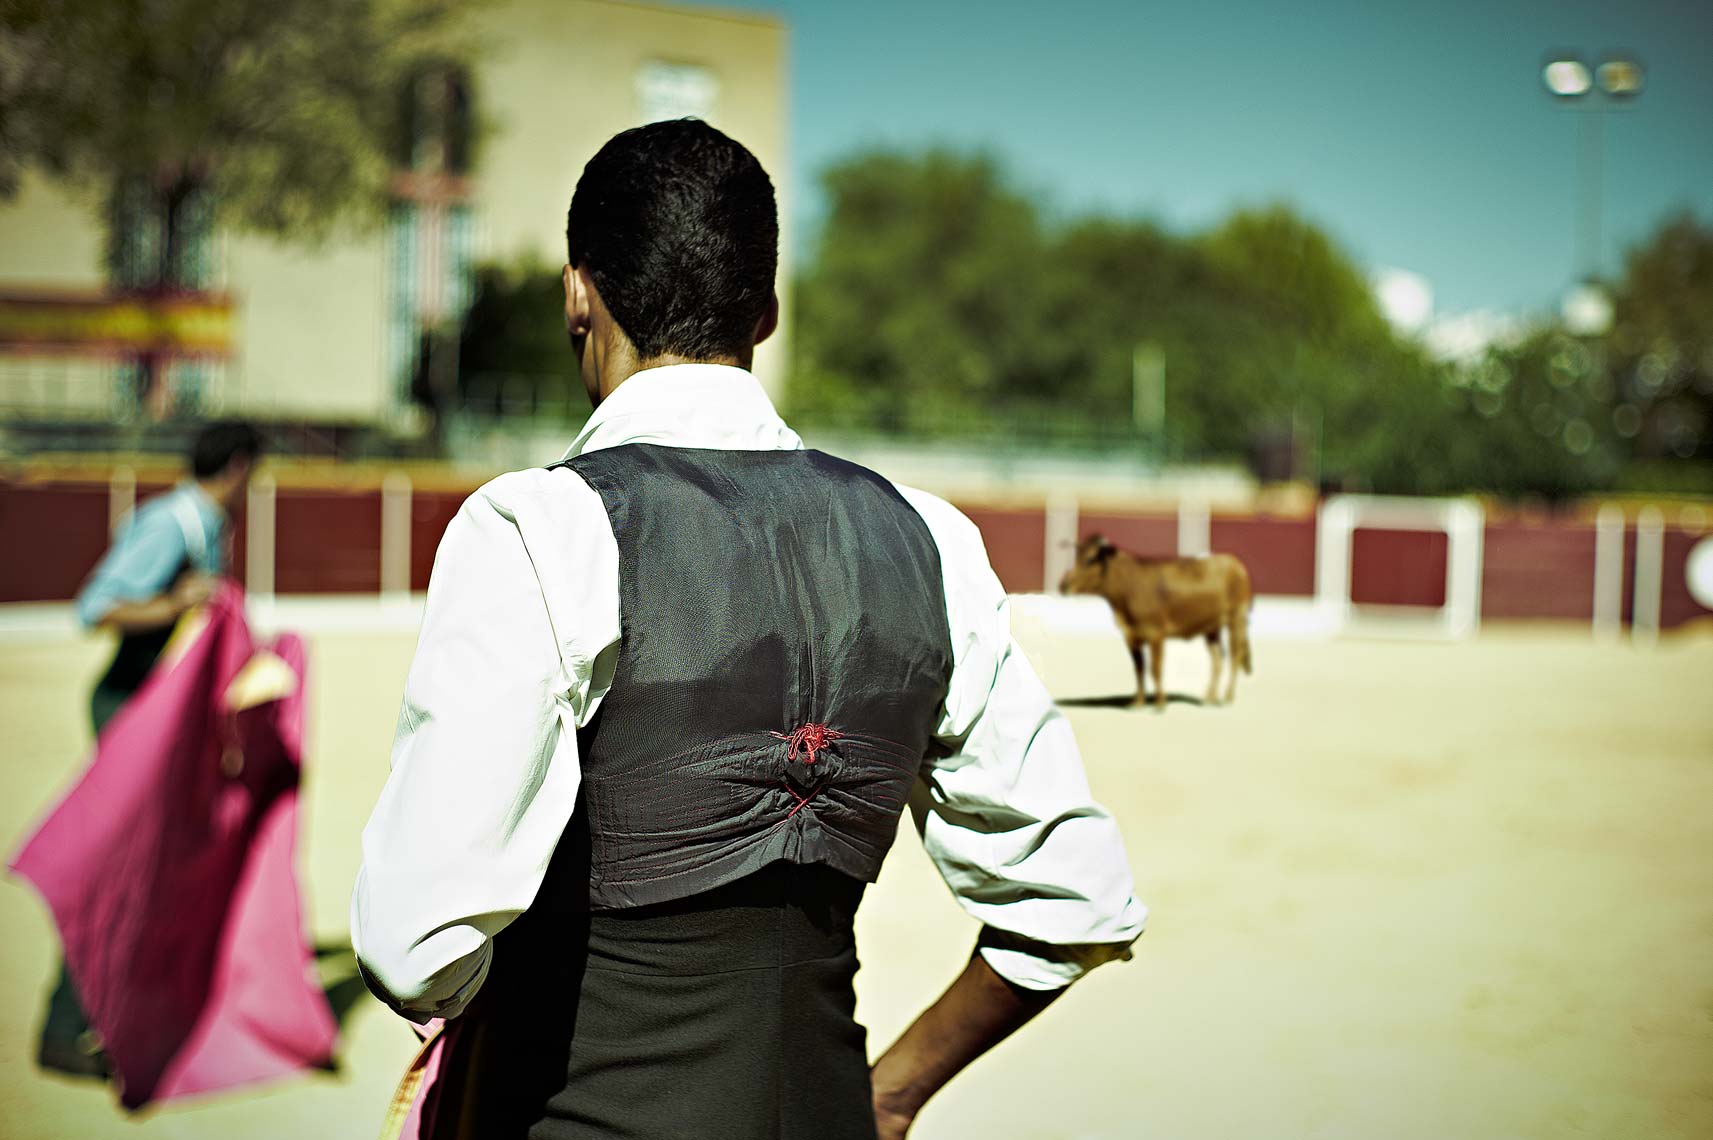 Bullfight2.jpg